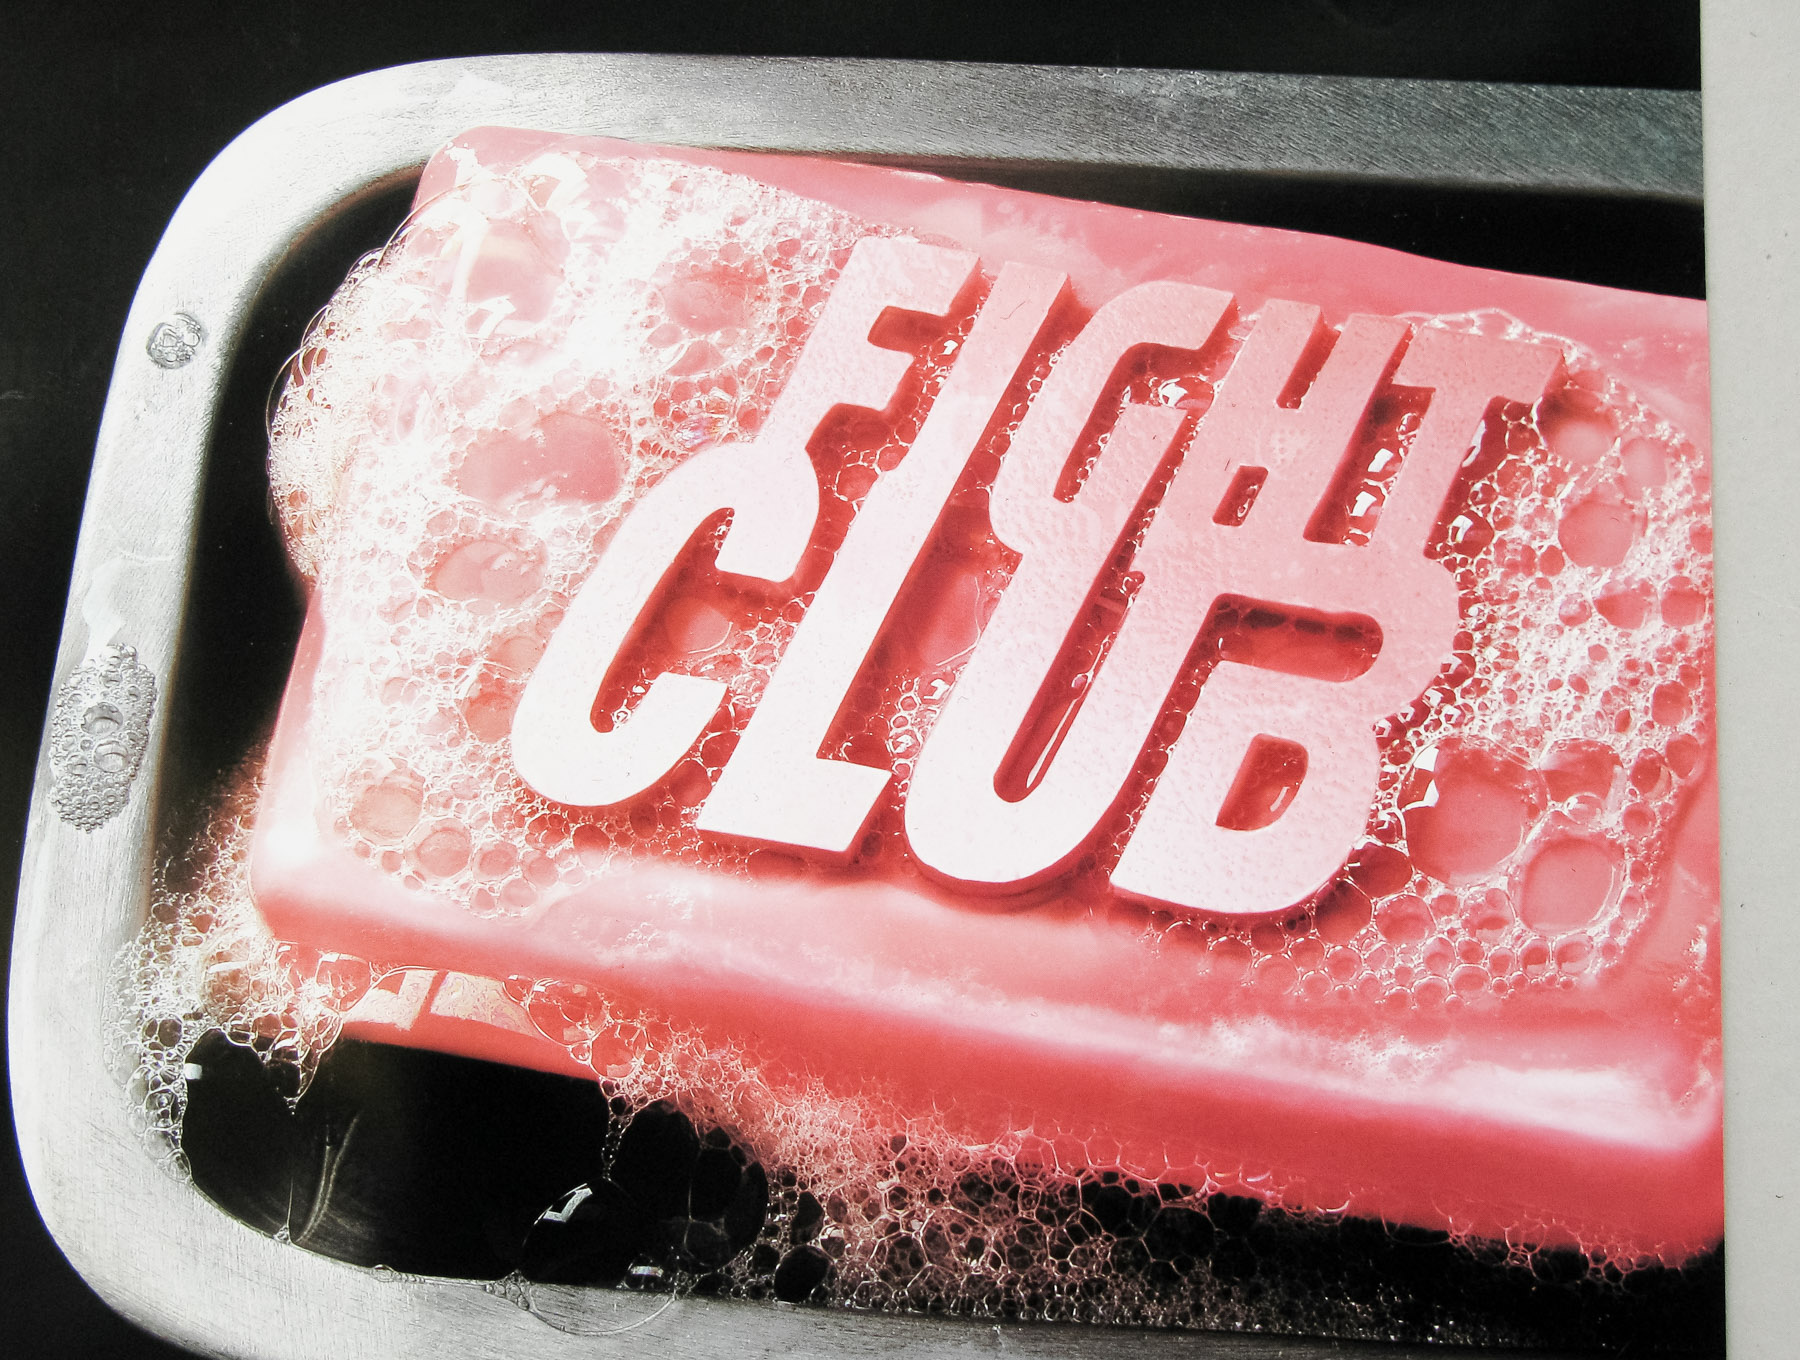 Fight Club / one sheet / advance / USA